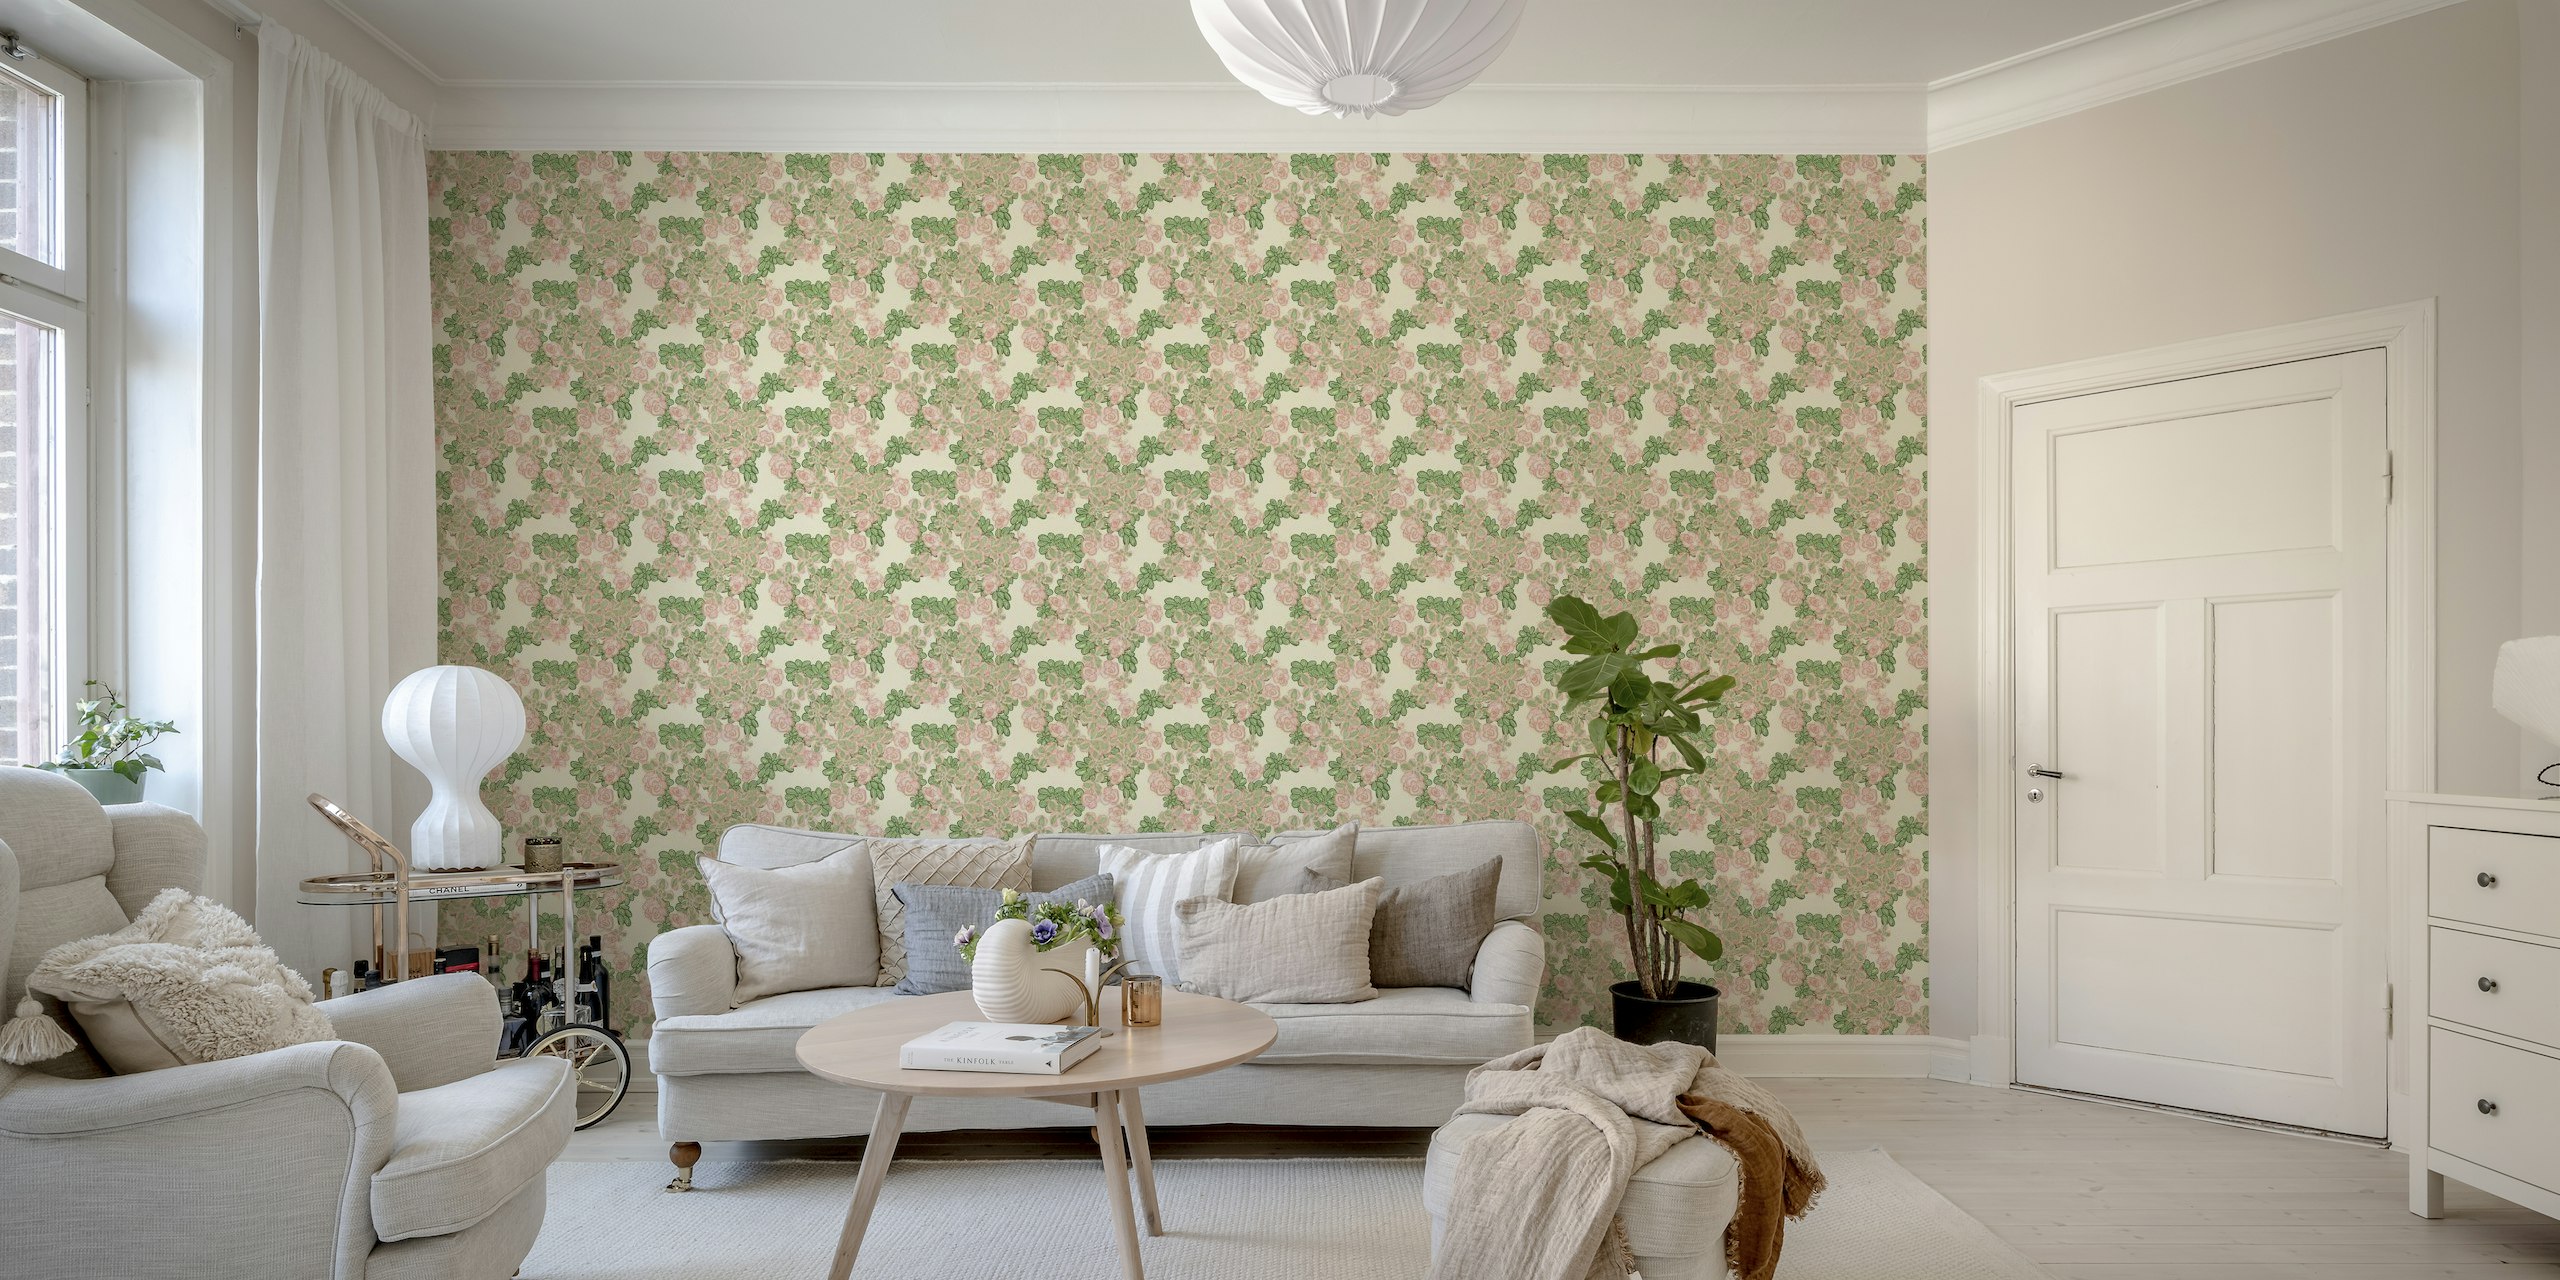 Zidna slika s cvijećem Sedum u vintage stilu u starinskoj bijeloj boji s nježno zelenim i ružičastim detaljima.